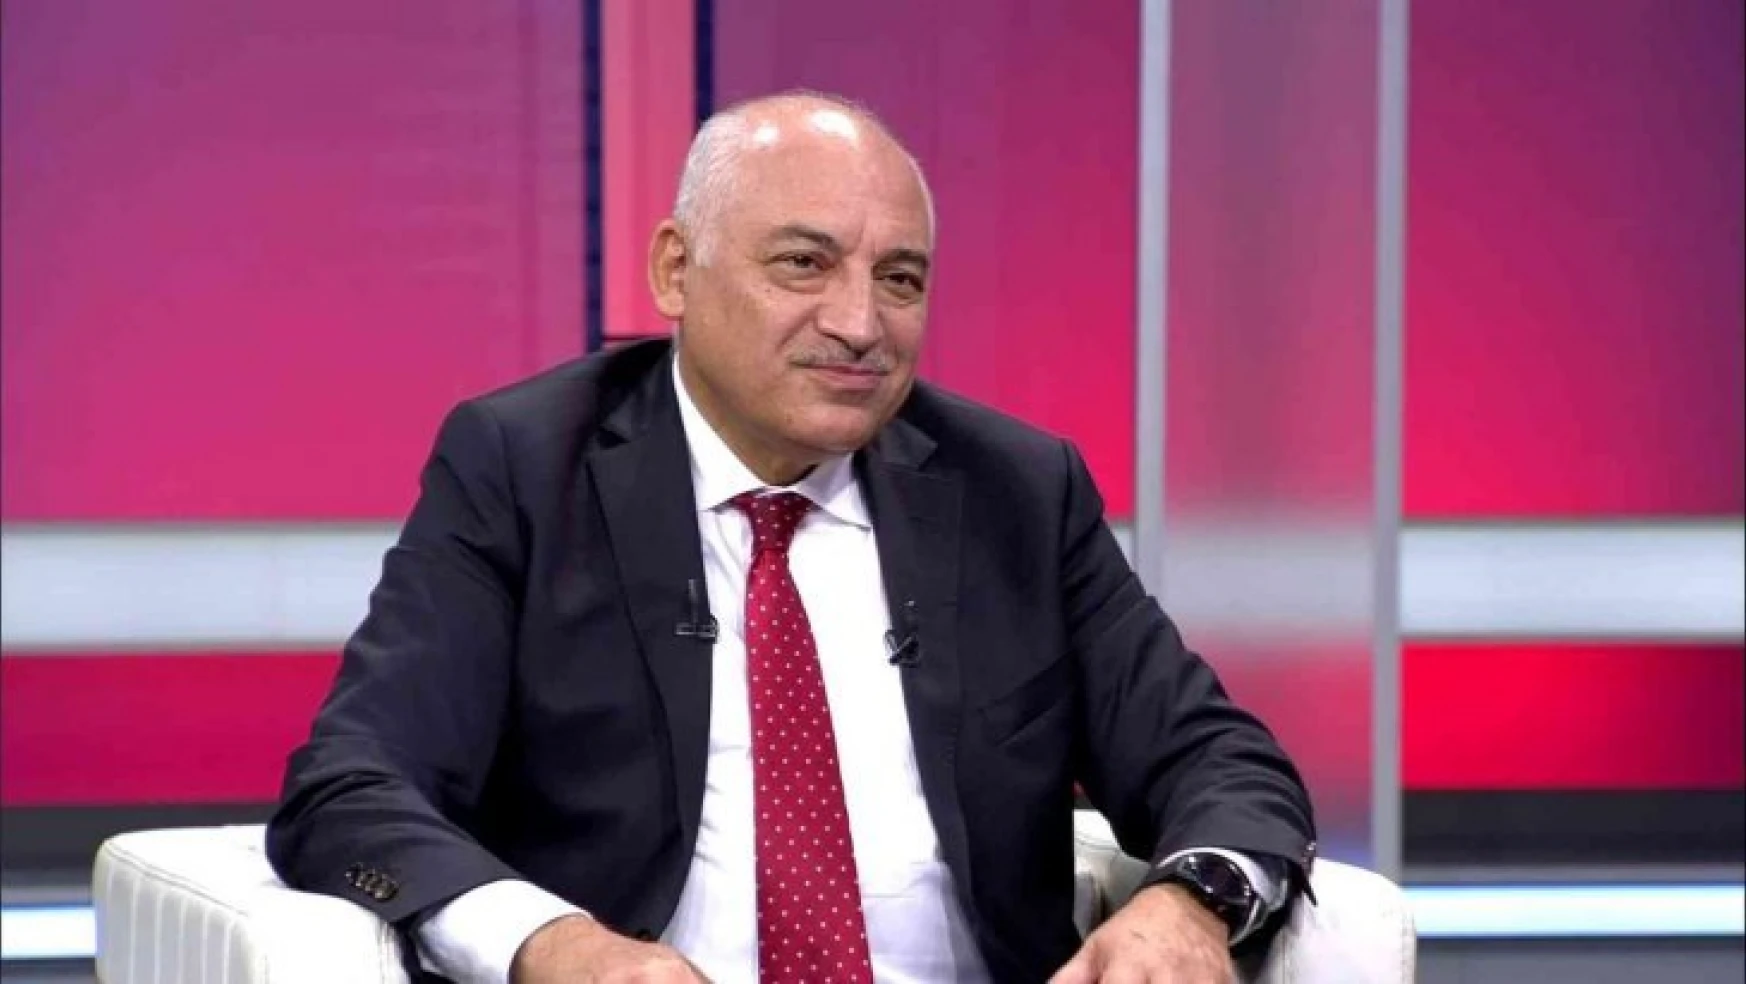 TFF Başkanı Mehmet Büyükekşi: '1959 öncesi şampiyonluklar geçmişin konusu, biz öncelikle geleceğe bakacağız'